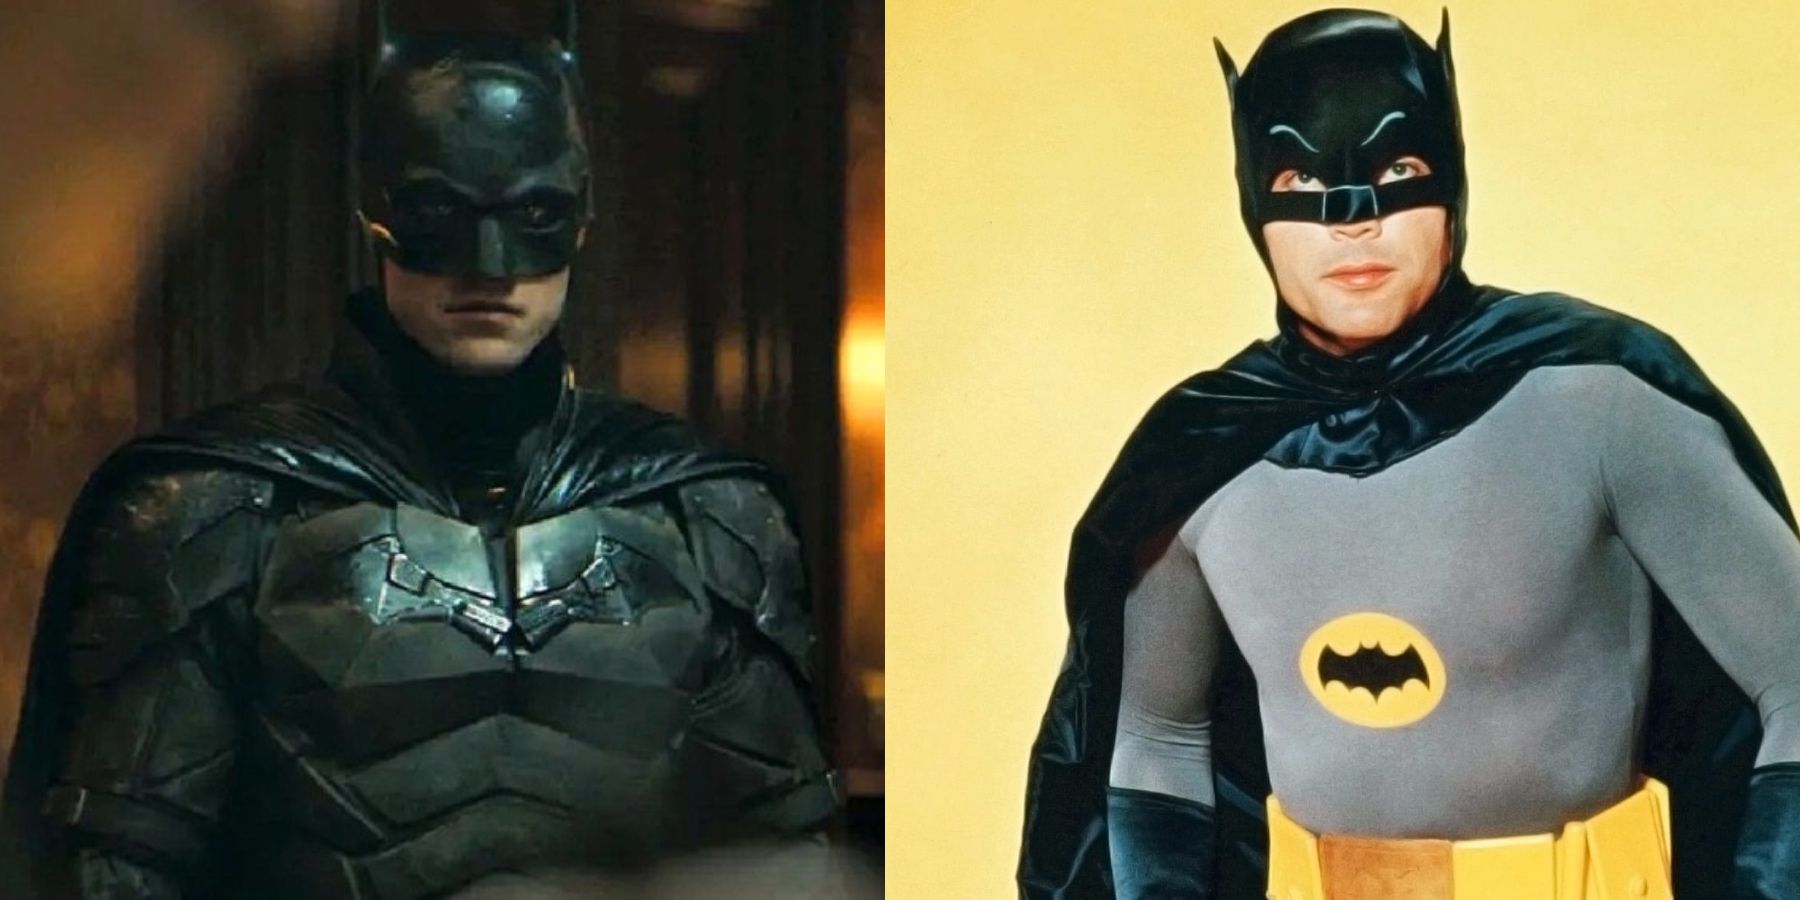 Fan Art Gives Robert Pattinson's Batman An Adam West Makeover